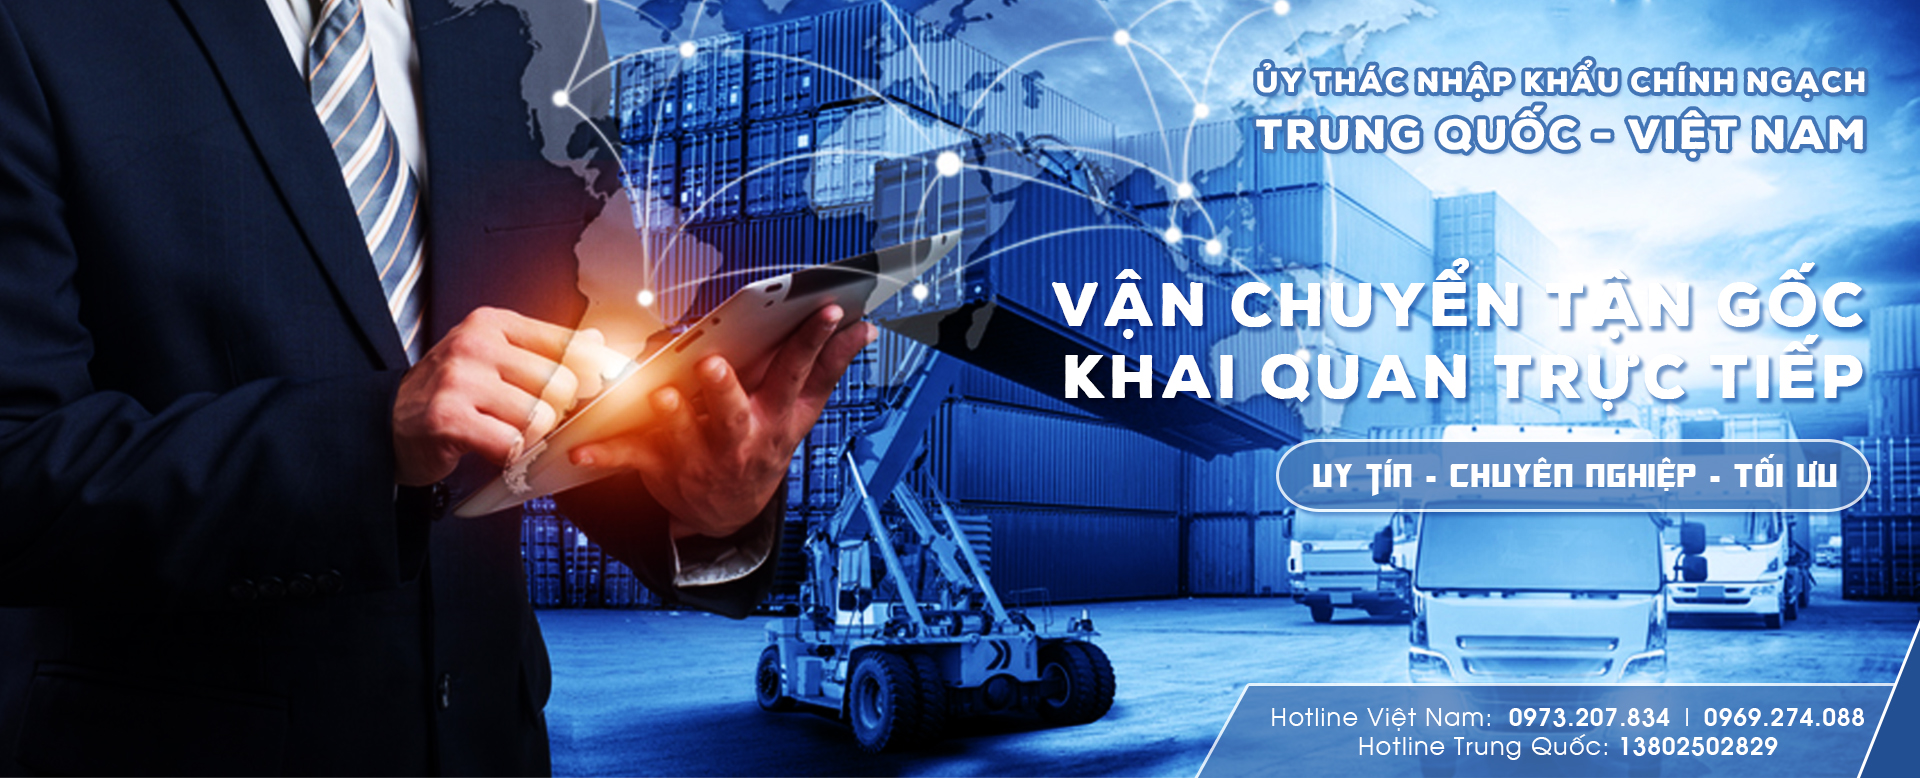 Bảng giá vận chuyển hàng hóa Trung Quốc - Việt Nam đường chính ngạch